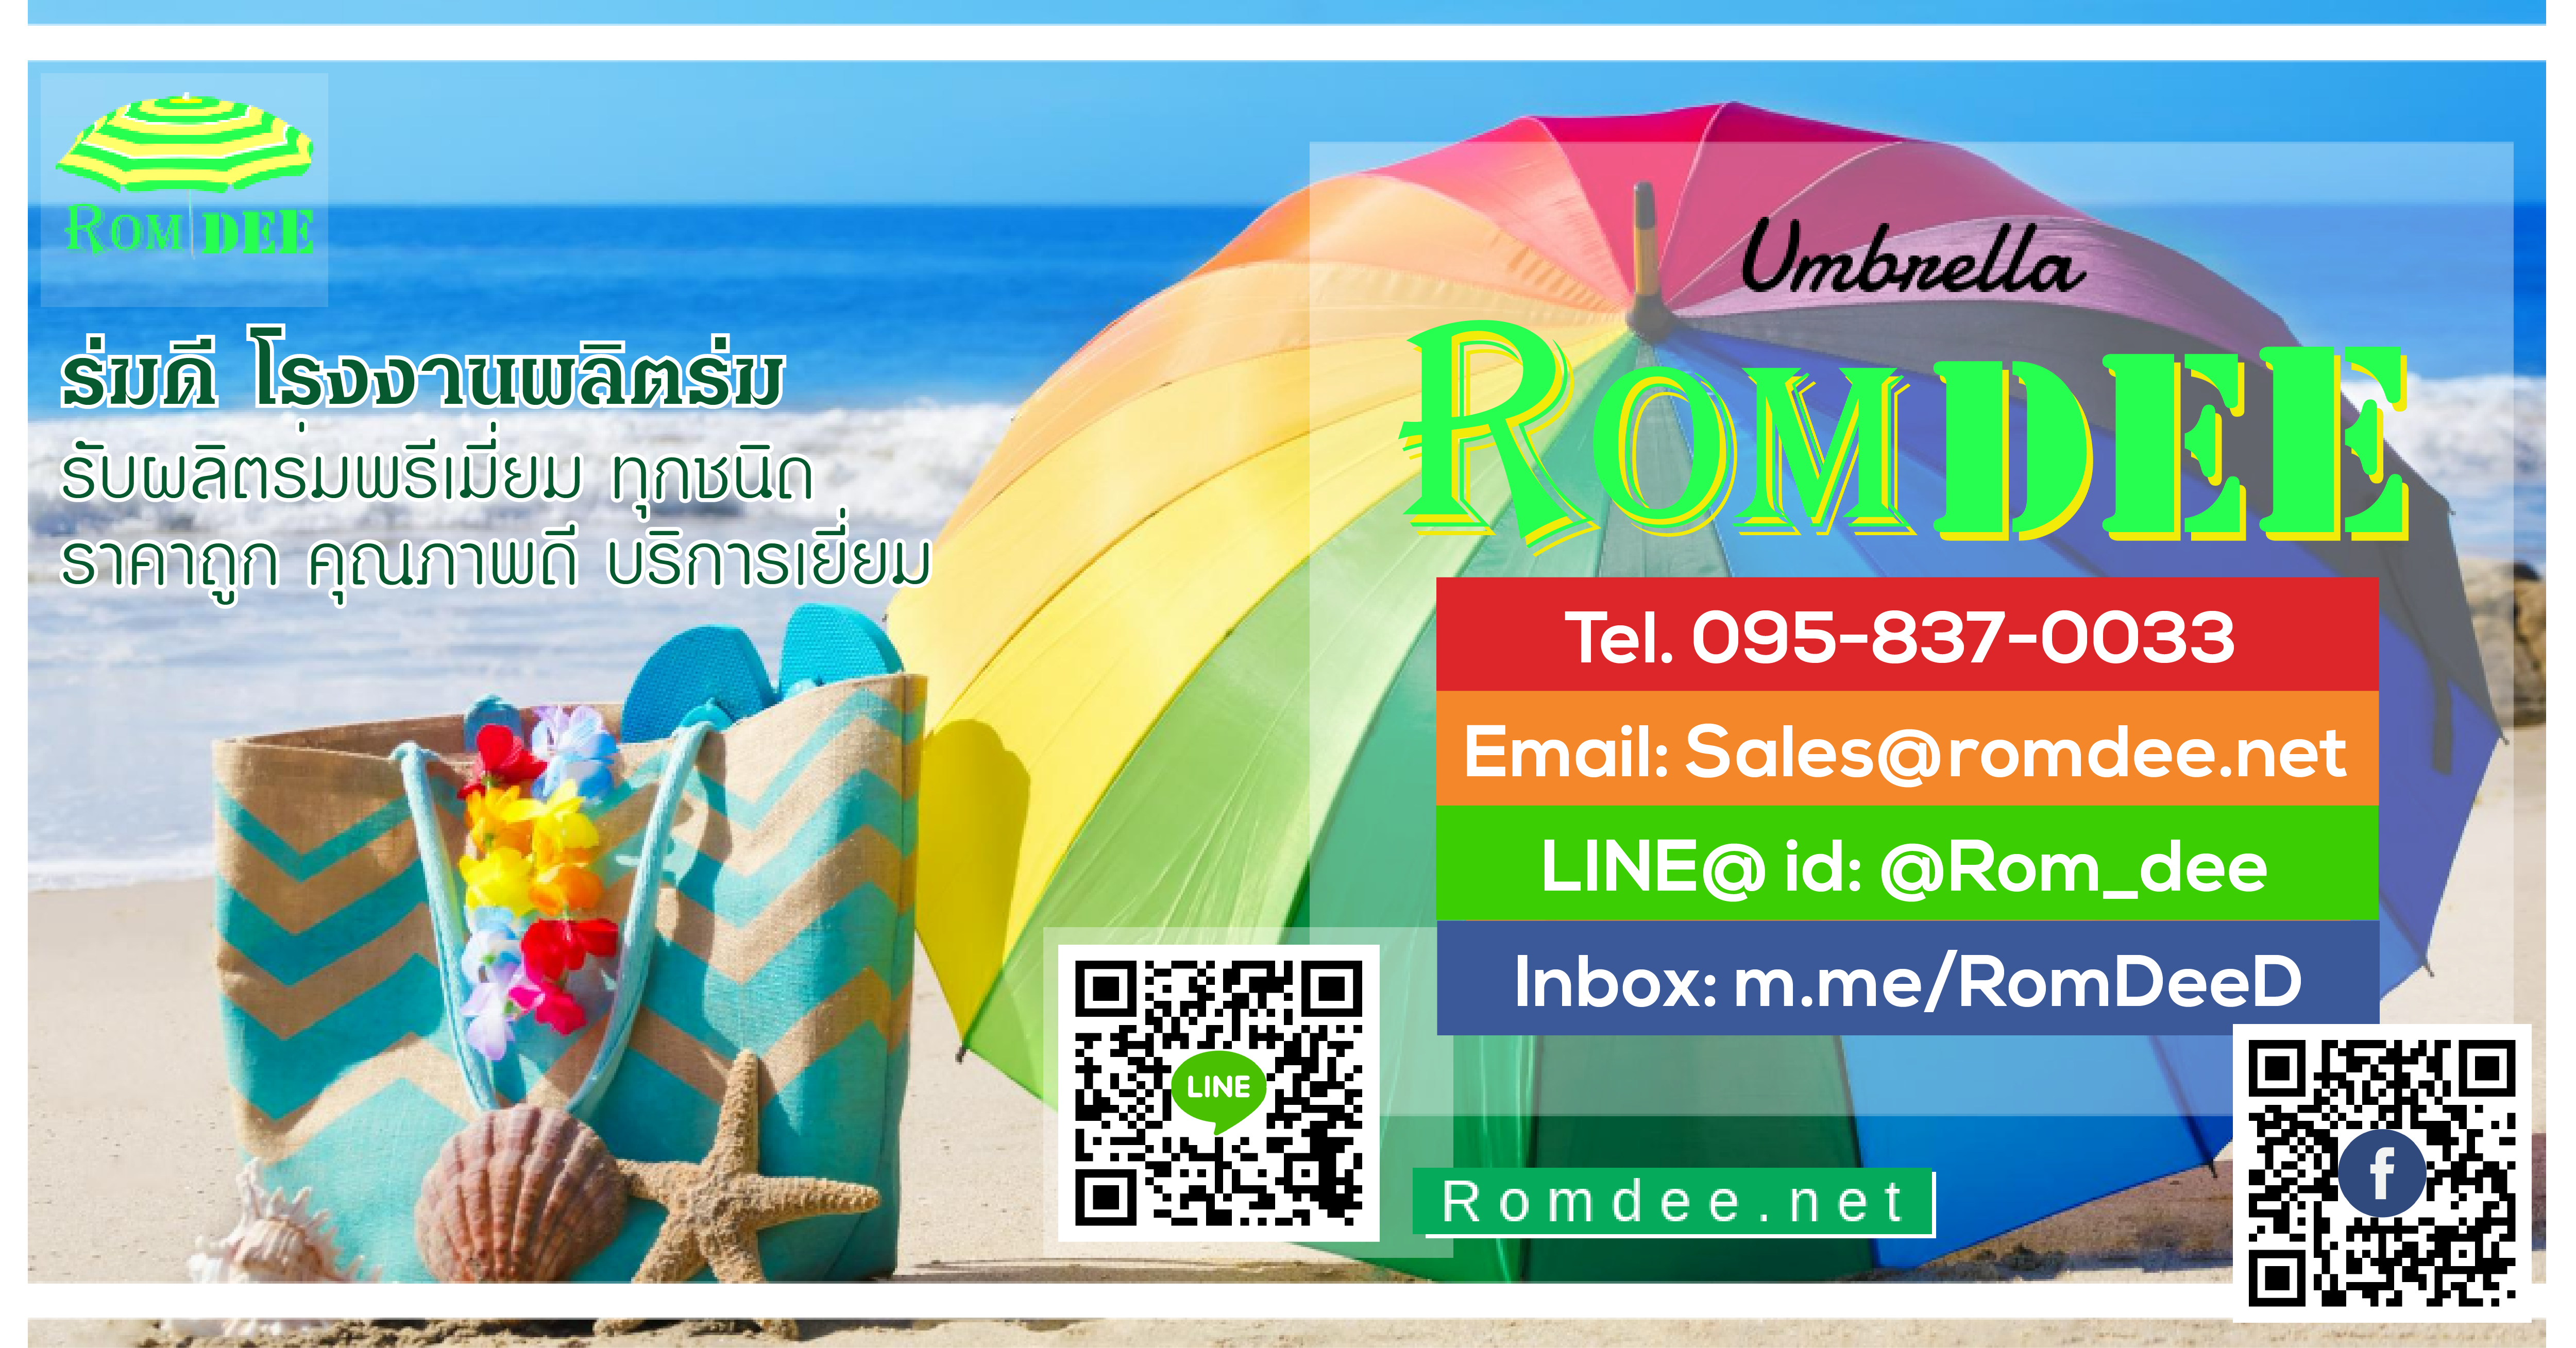 (c) Romdee.net